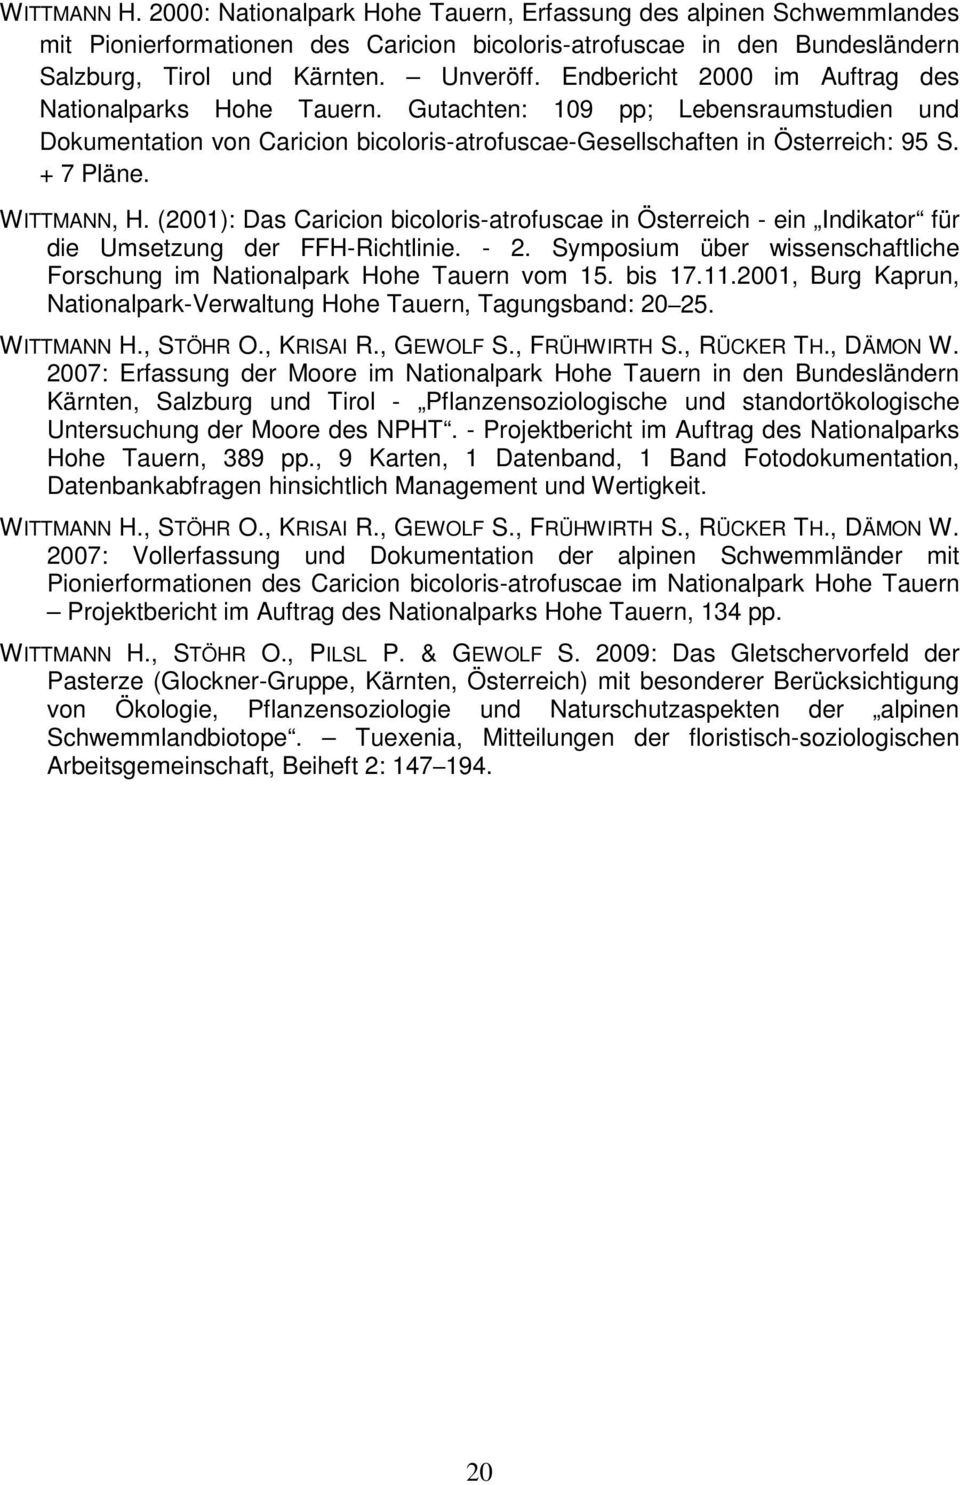 WITTMANN, H. (2001): Das Caricion bicoloris-atrofuscae in Österreich - ein Indikator für die Umsetzung der FFH-Richtlinie. - 2.